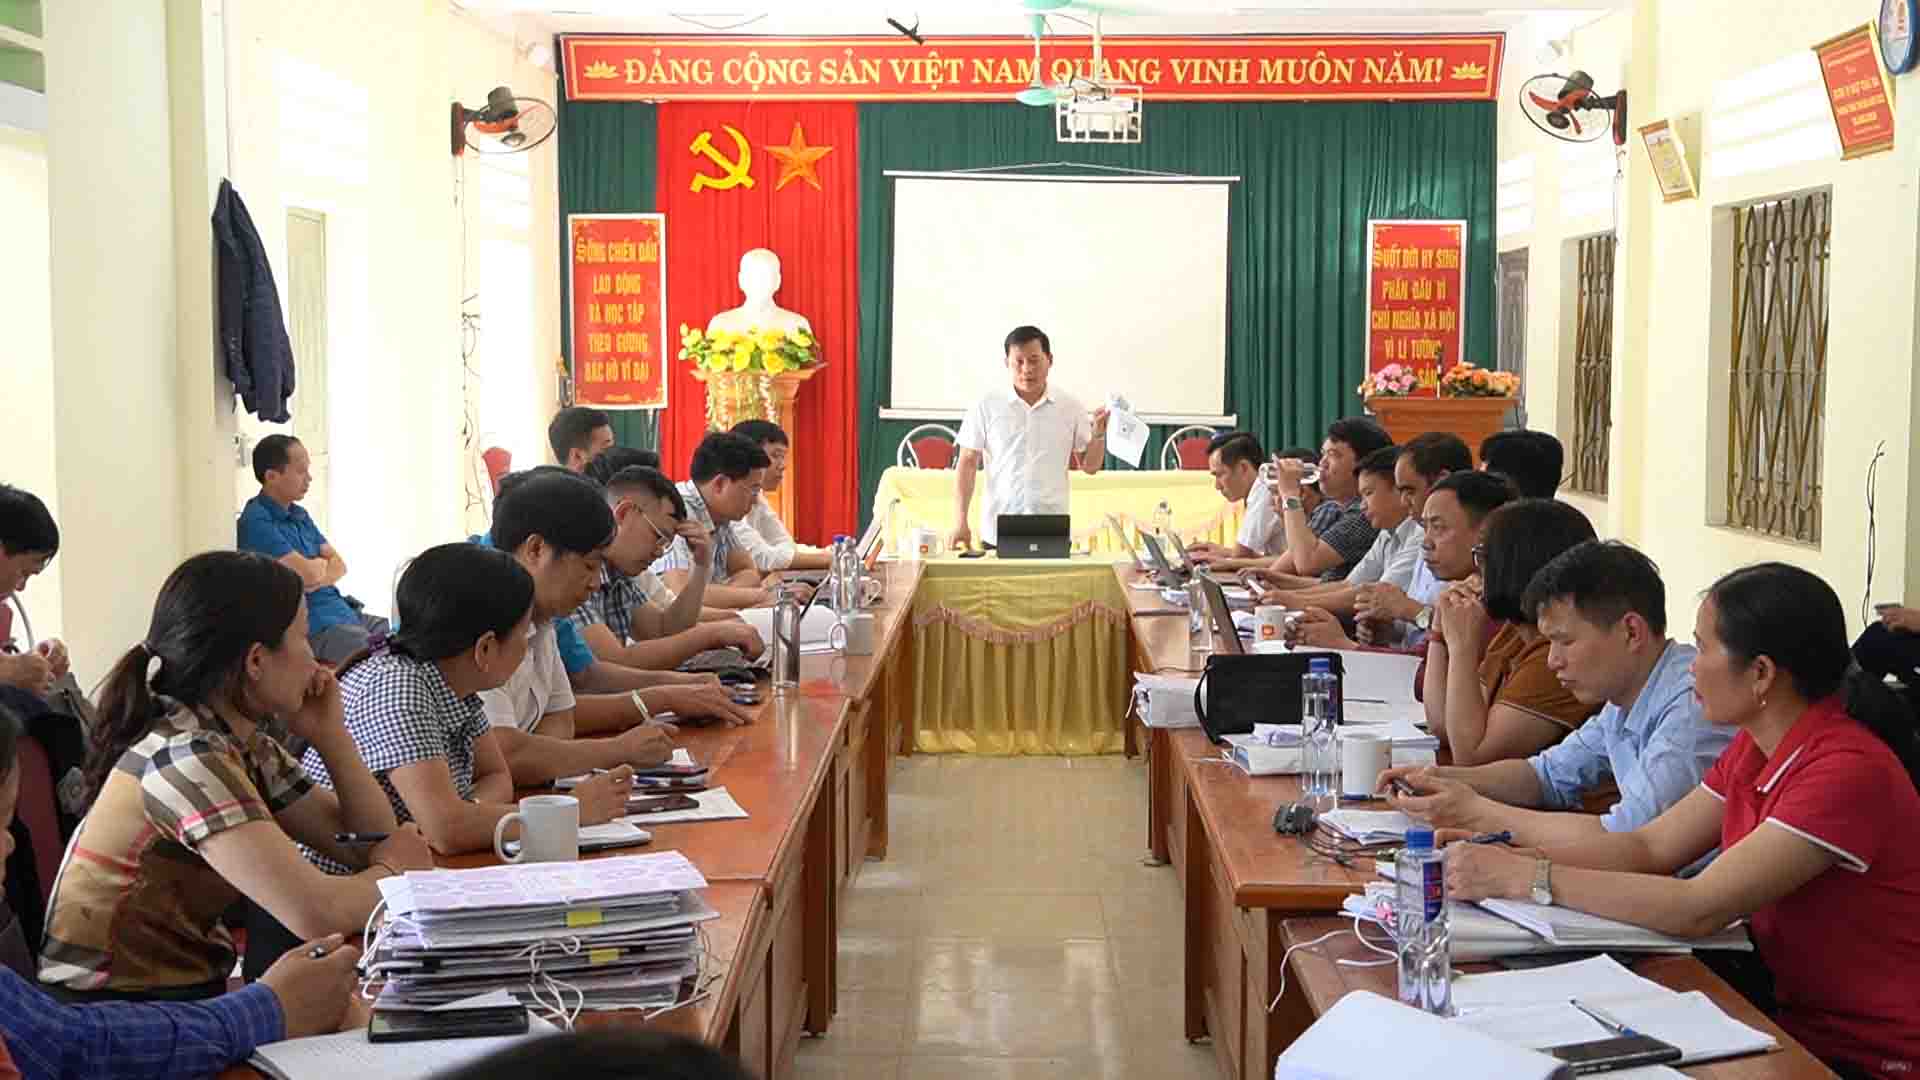 BCĐ Chương trình MTQG huyện Hoàng su Phì kiểm tra giám sát và hướng dẫn tại cơ sở